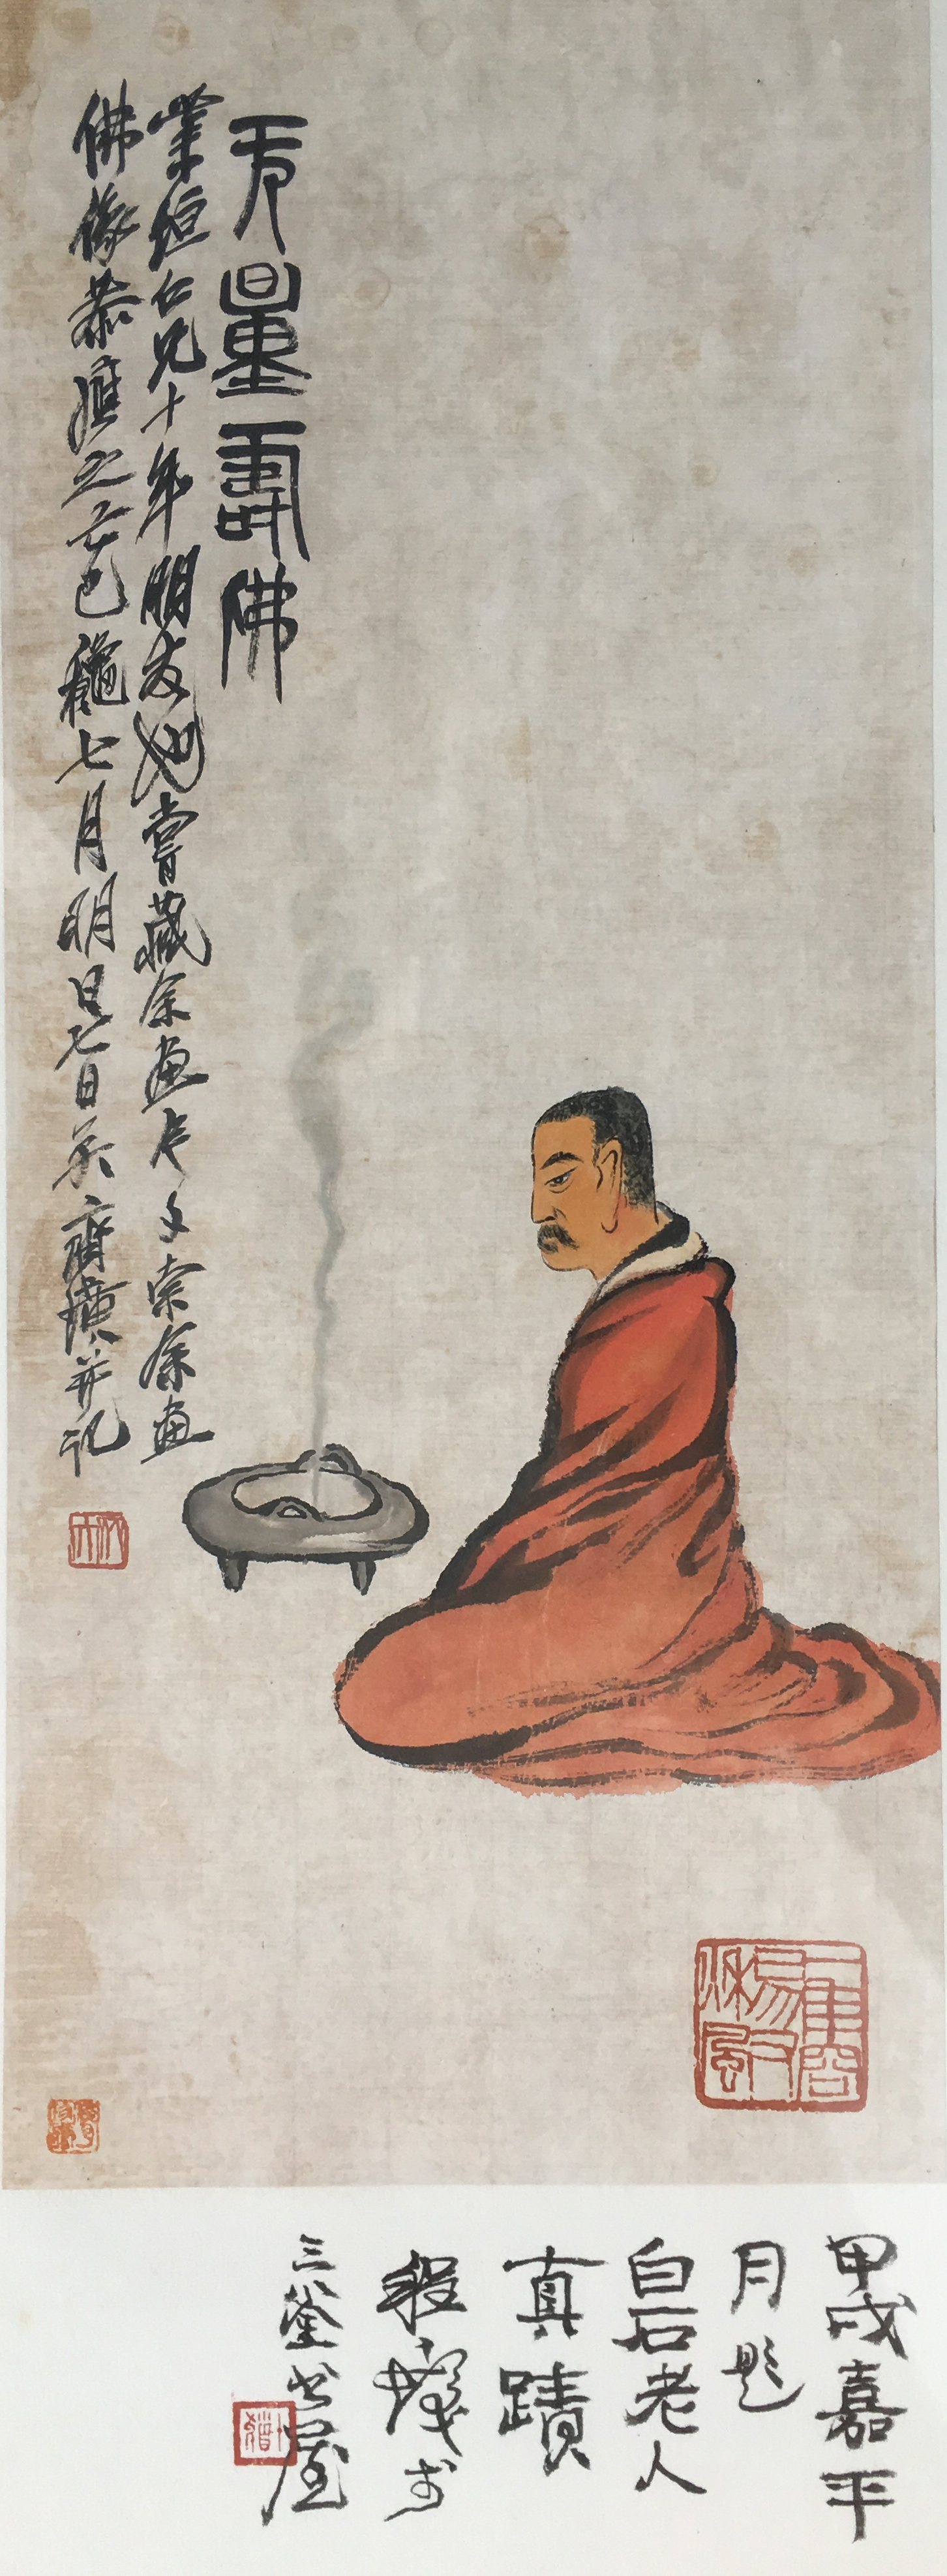 [154]齐白石(款)(1864--1957)  无量寿佛 